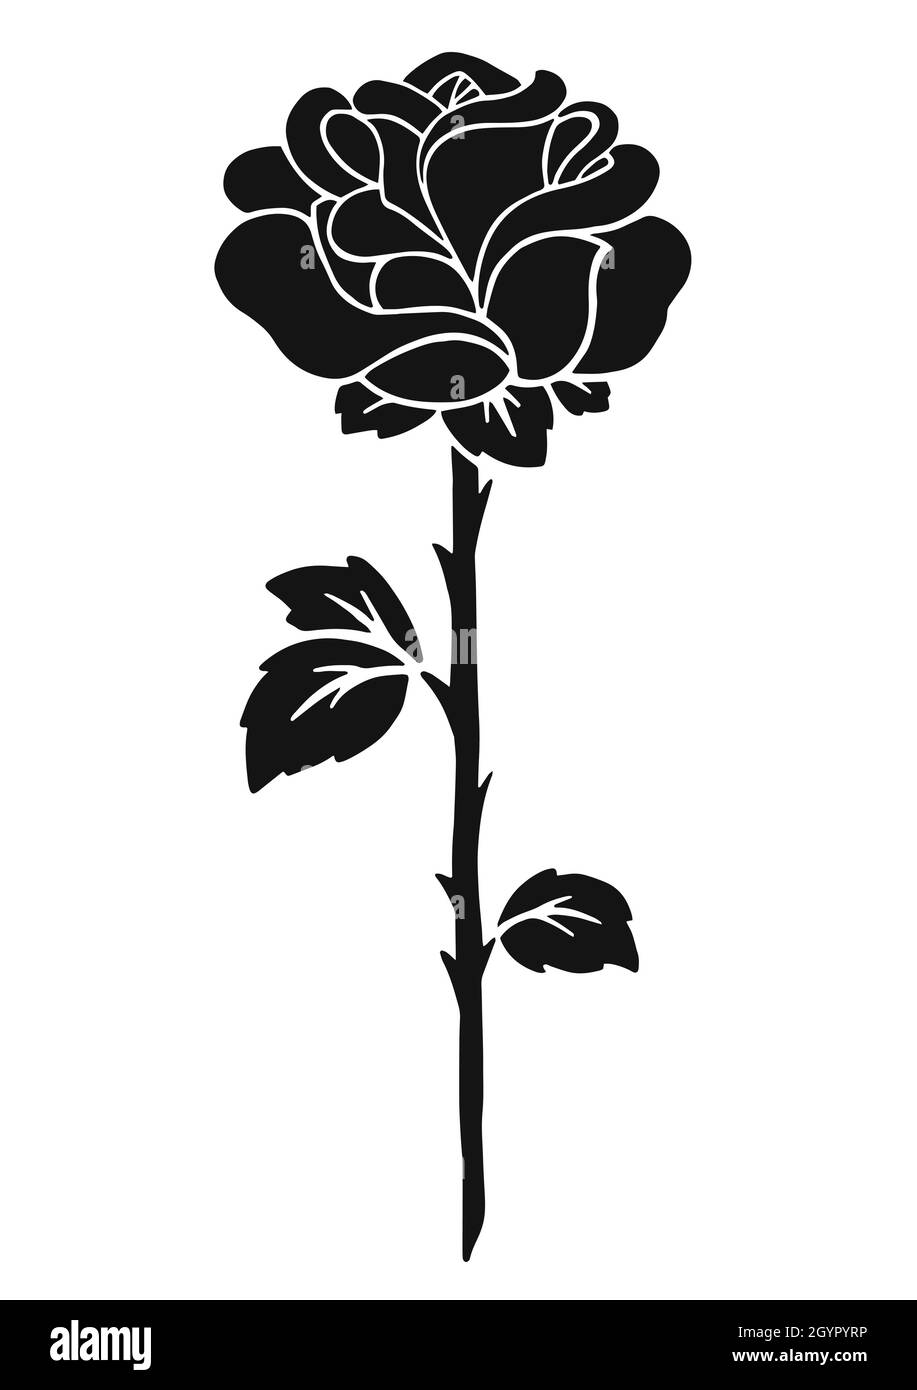 Rose flower. Black silhouette. Design element. Vector illustration ...